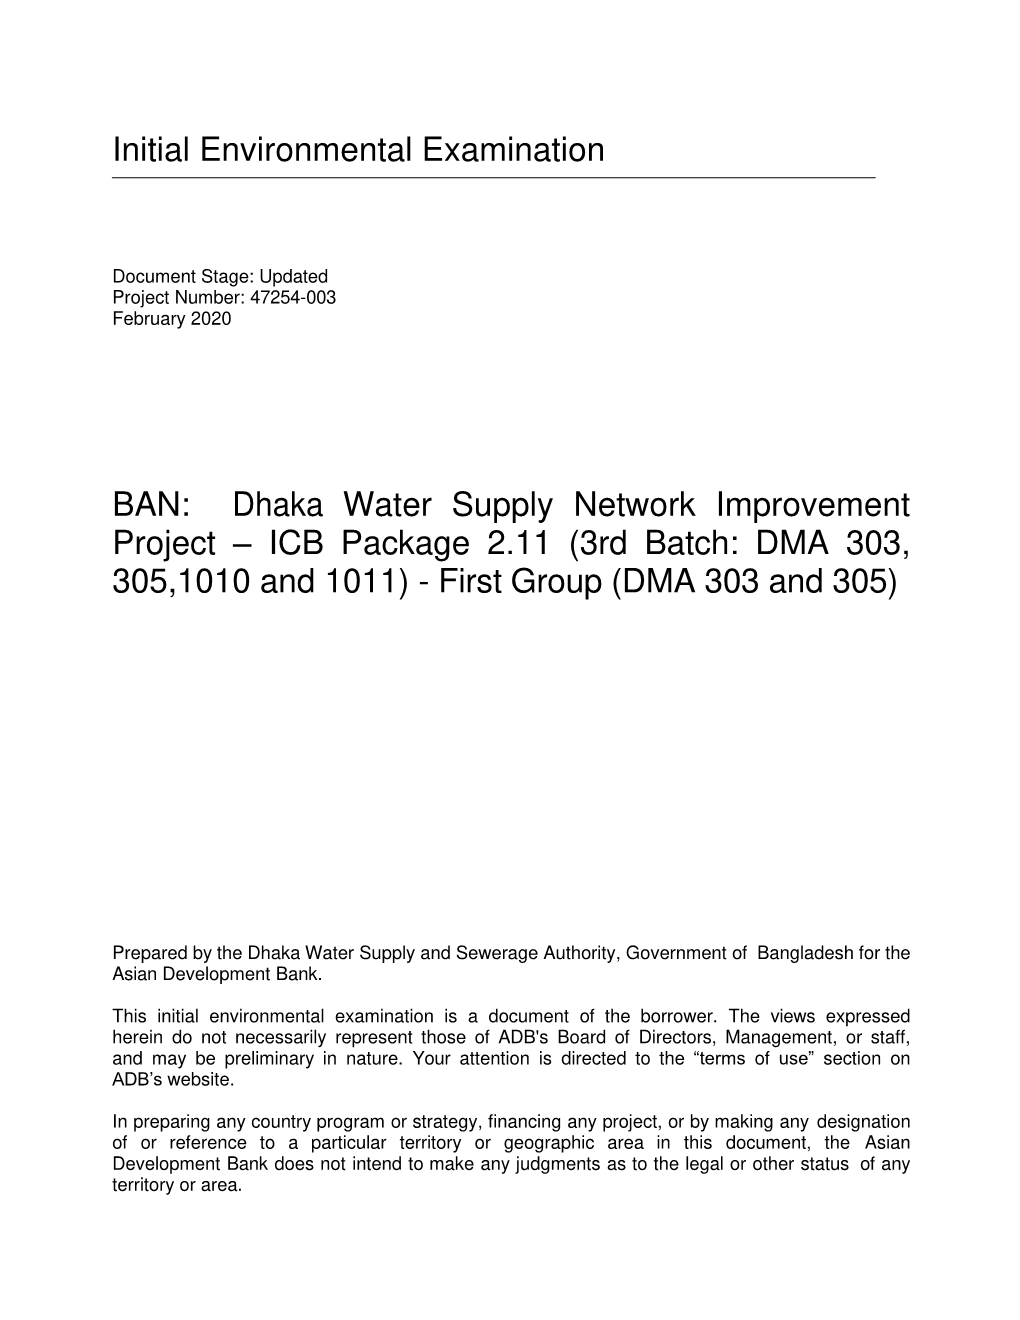 47254-003: Dhaka Water Supply Network Improvement